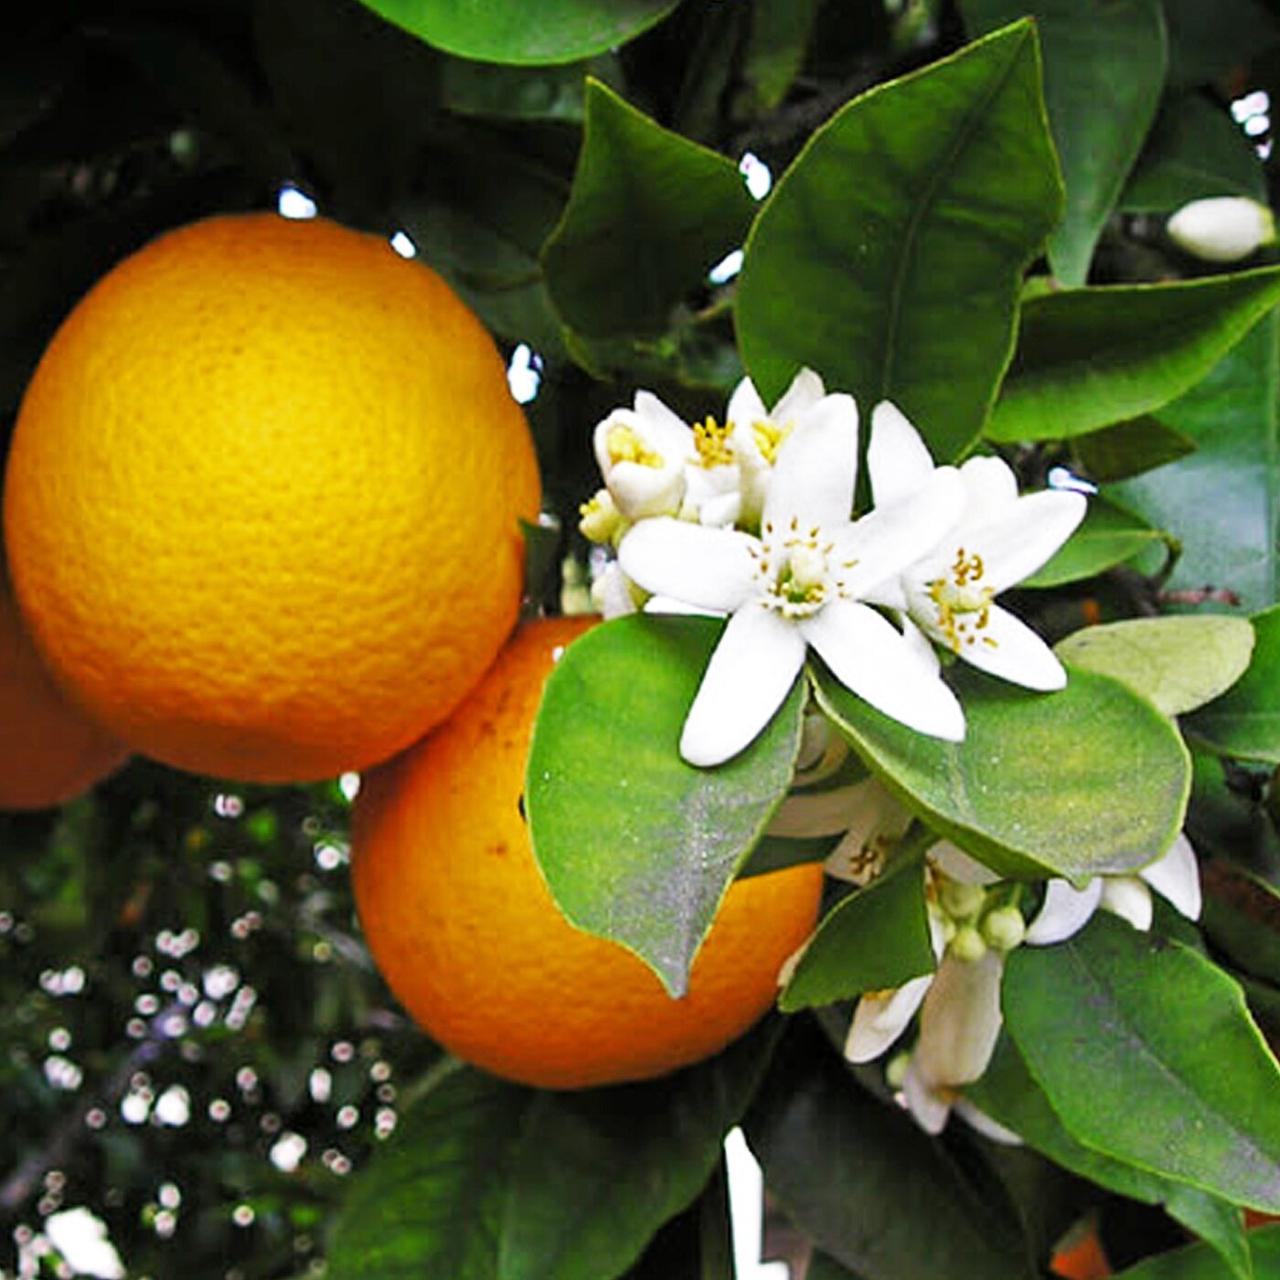 Апельсин Вашингтон Навел